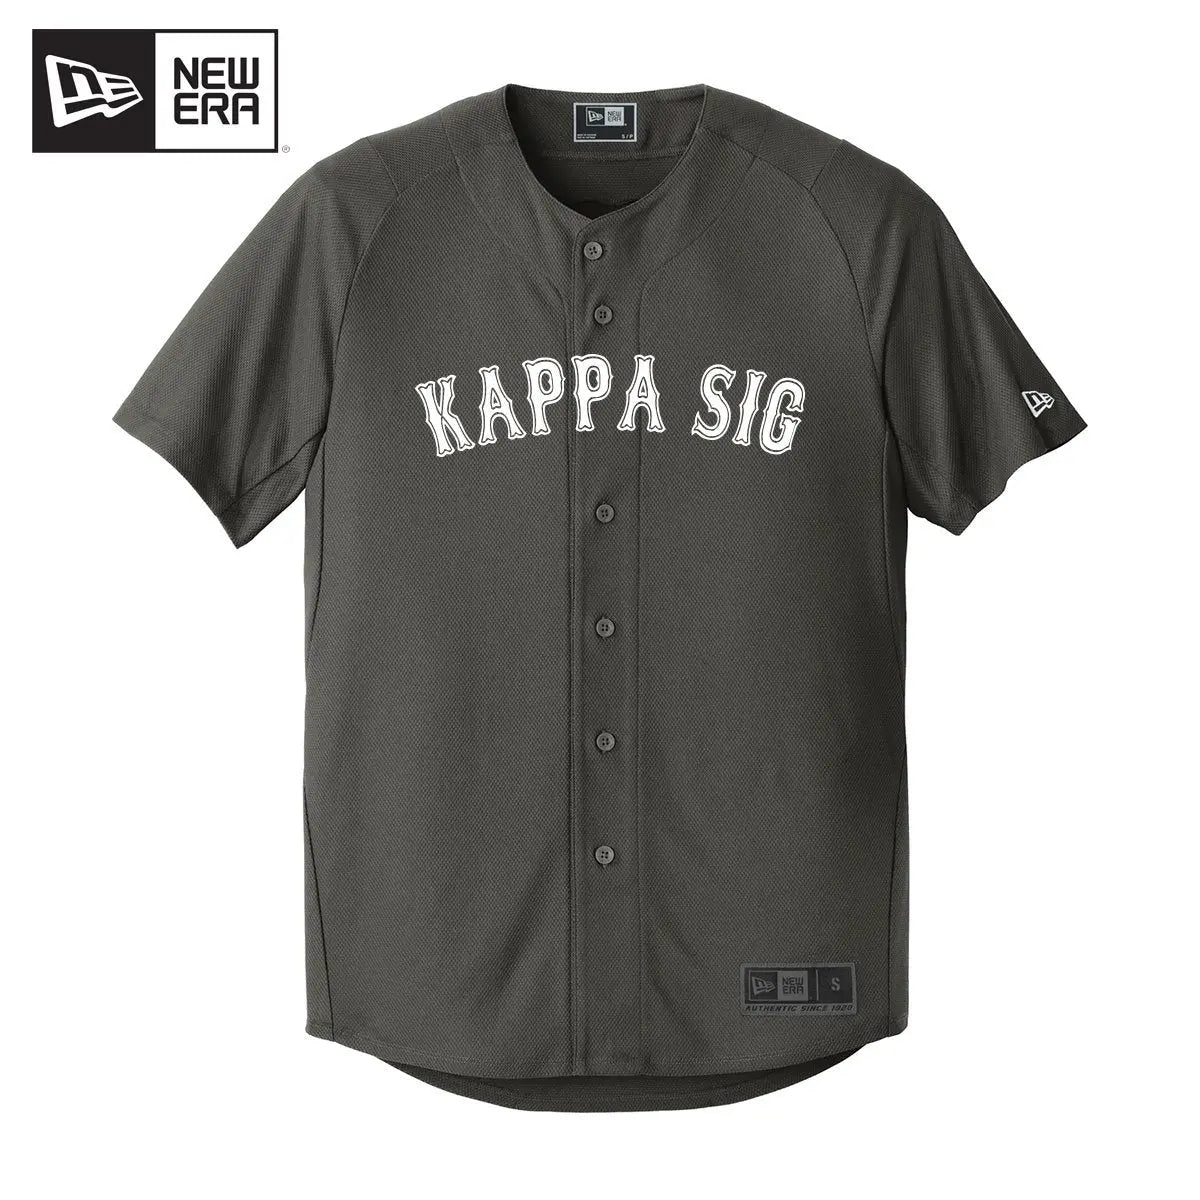 Kappa Sig New Era Graphite Baseball Kappa Sigma Official Store